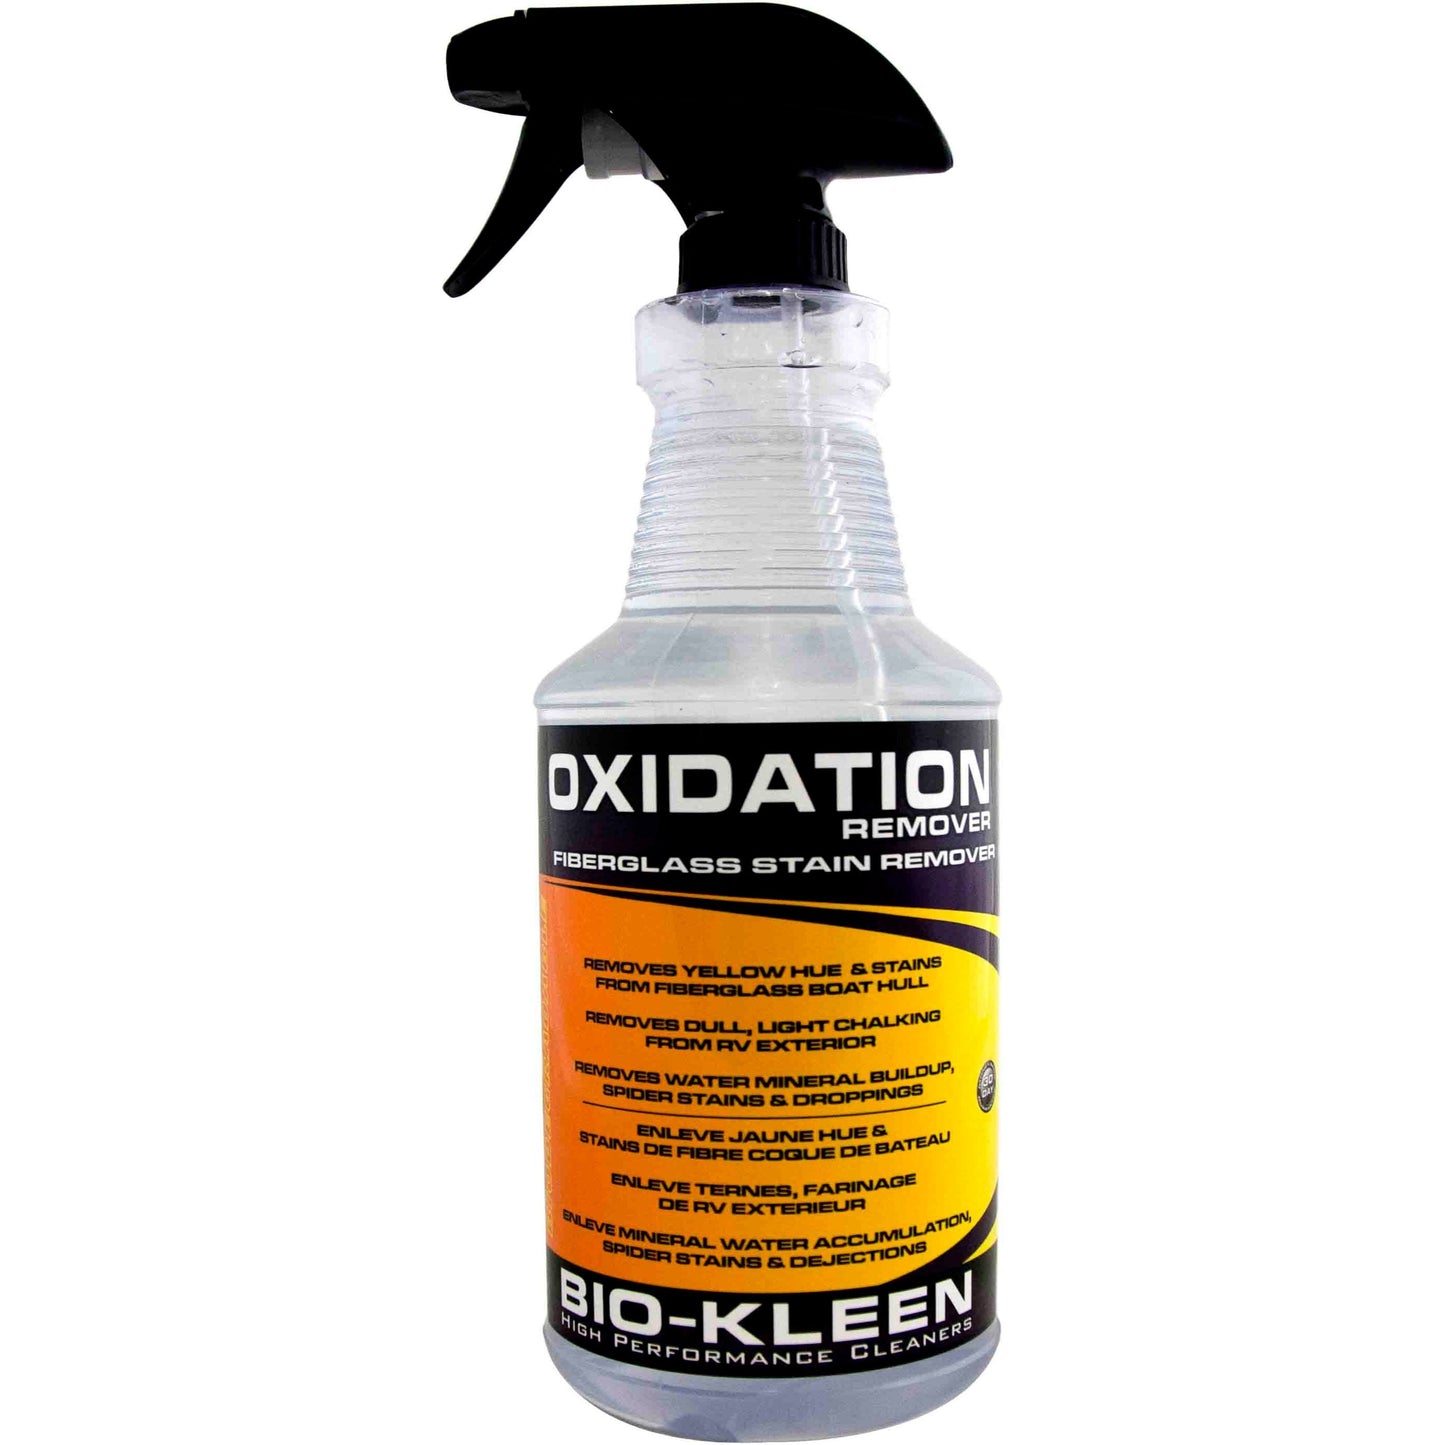 Oxidation Remover - Fiberglass Stain Remover